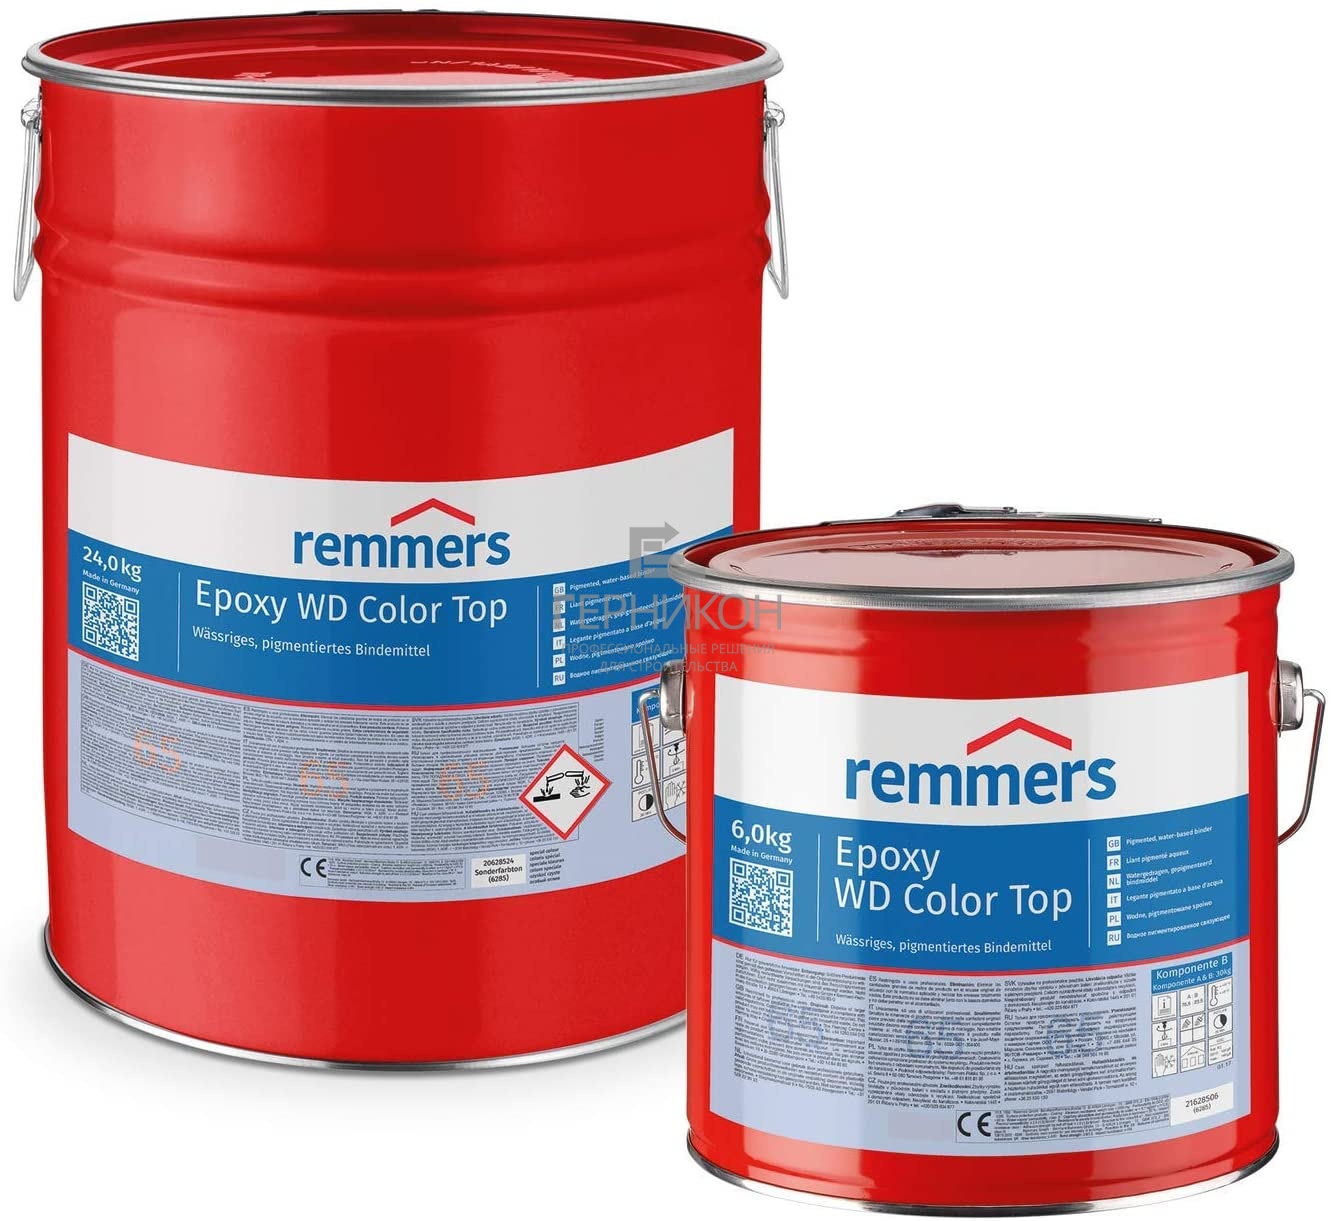 remmers epoxy wd color top(комп.a + комп.в) 30кг (реммерс эпокси вд)